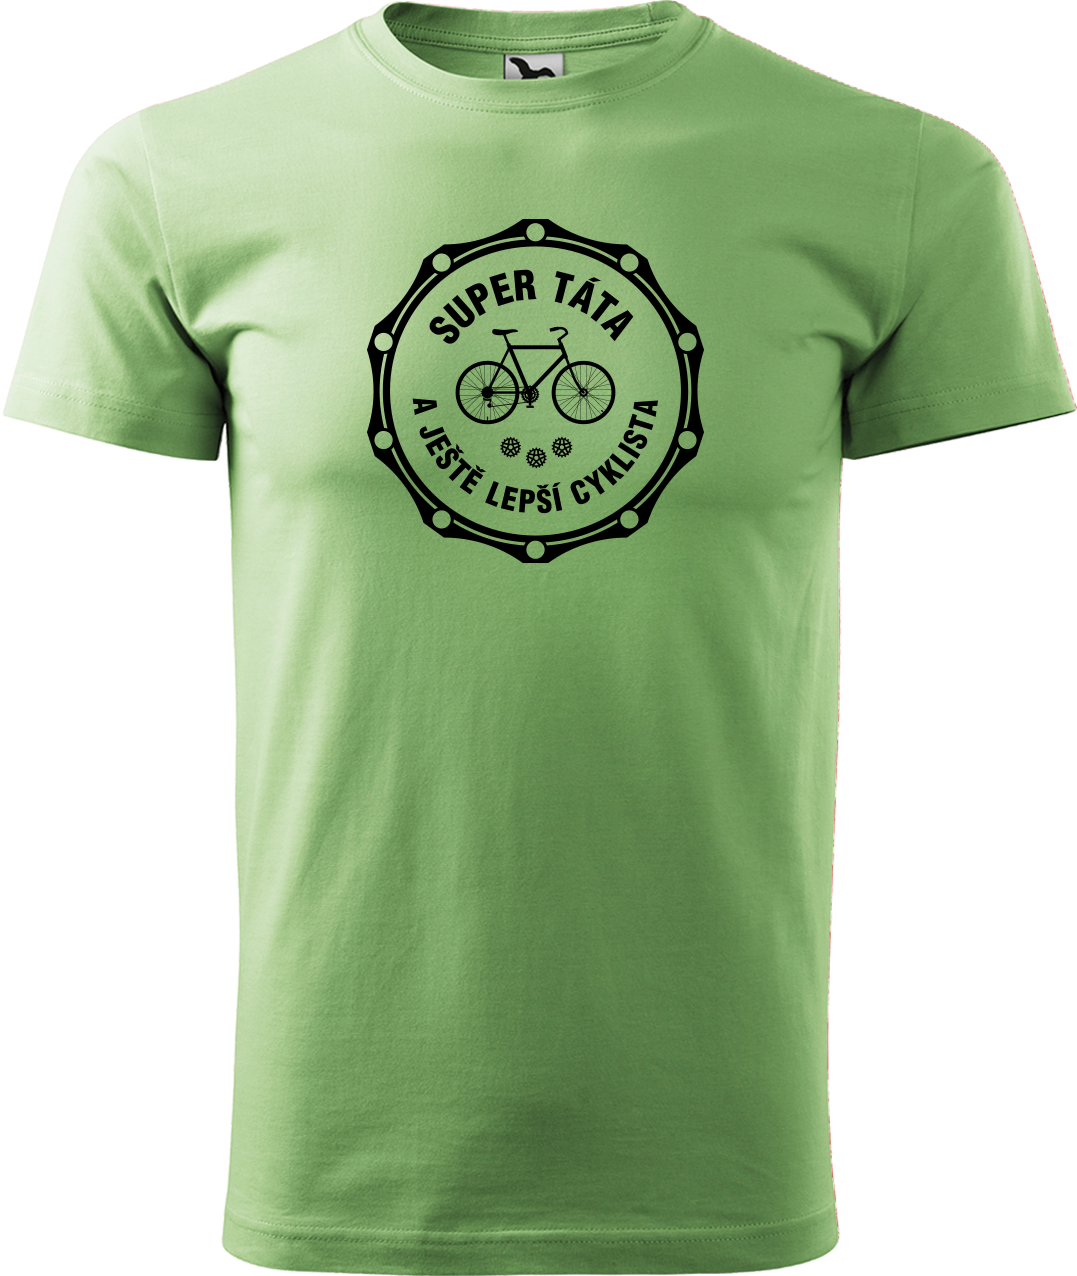 Pánské tričko pro cyklistu - Super táta a ještě lepší cyklista Velikost: XL, Barva: Trávově zelená (39)